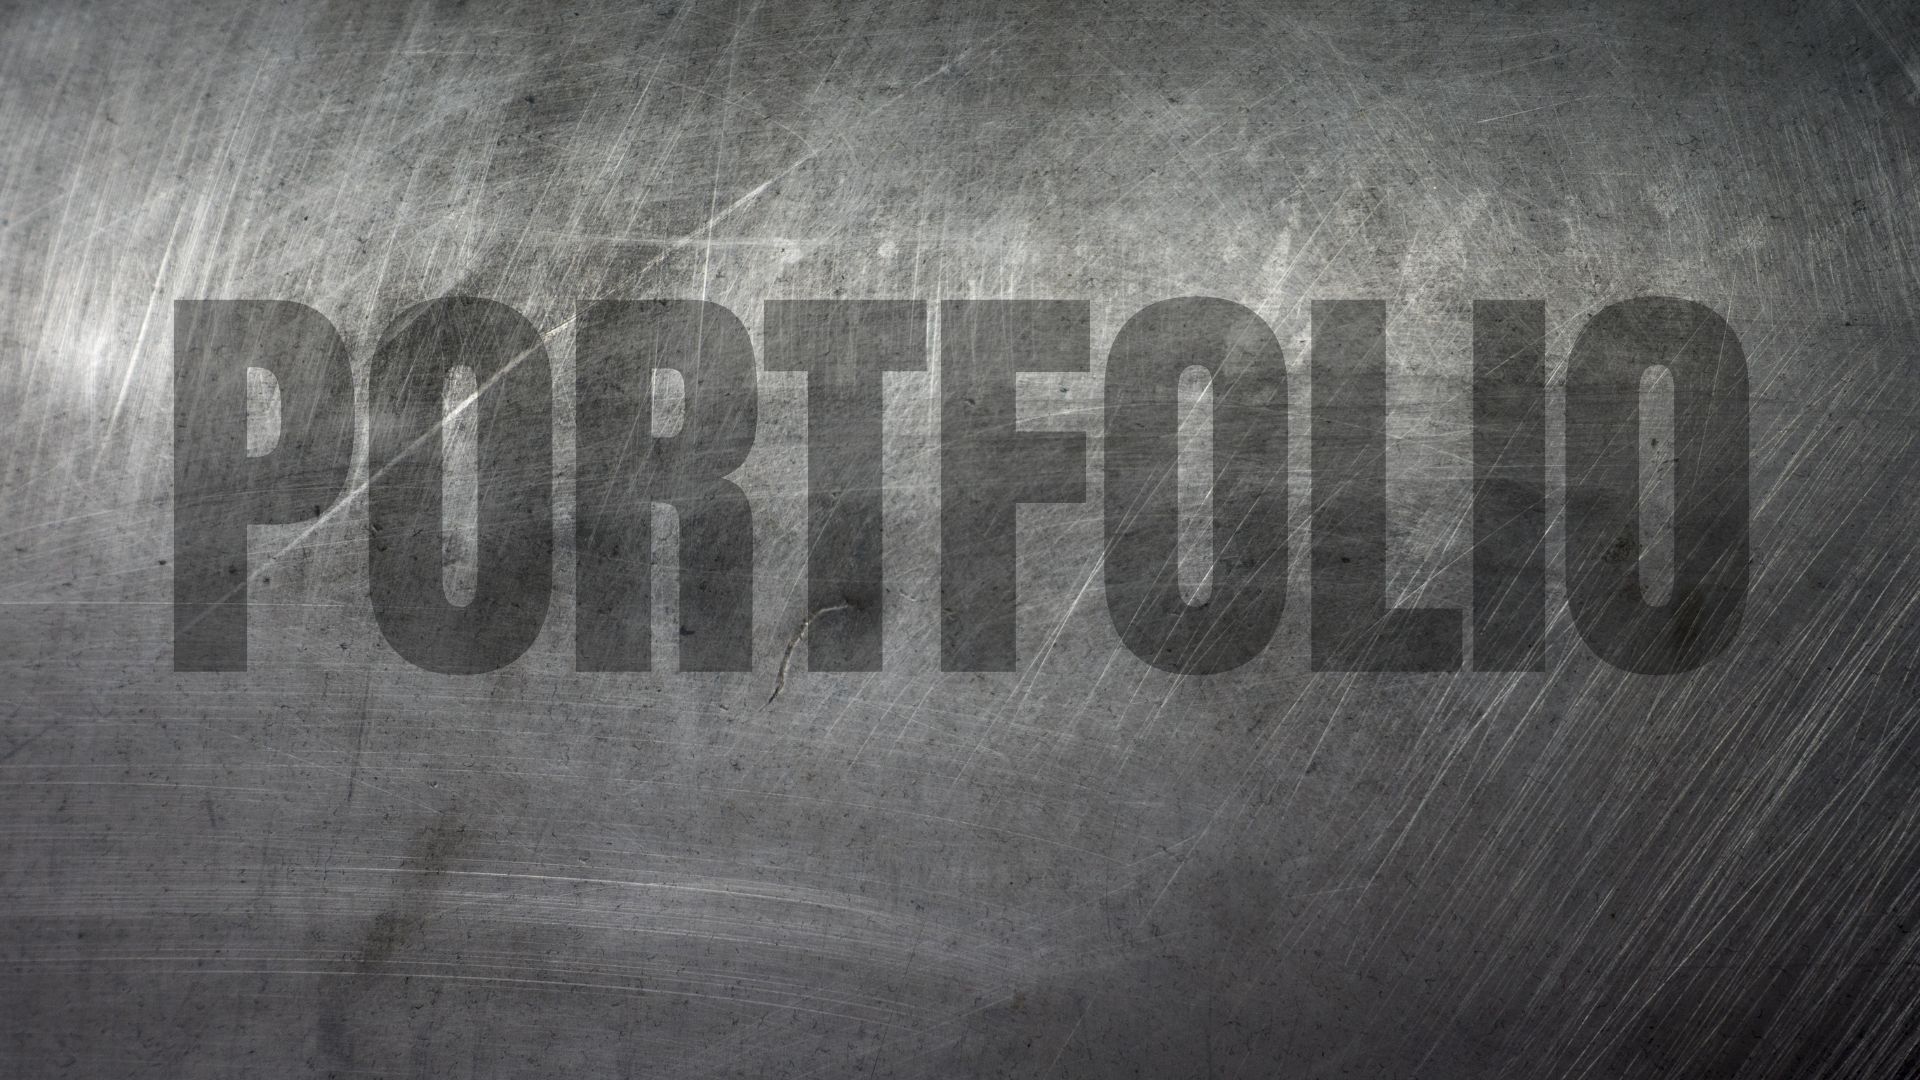 Build a portfolio